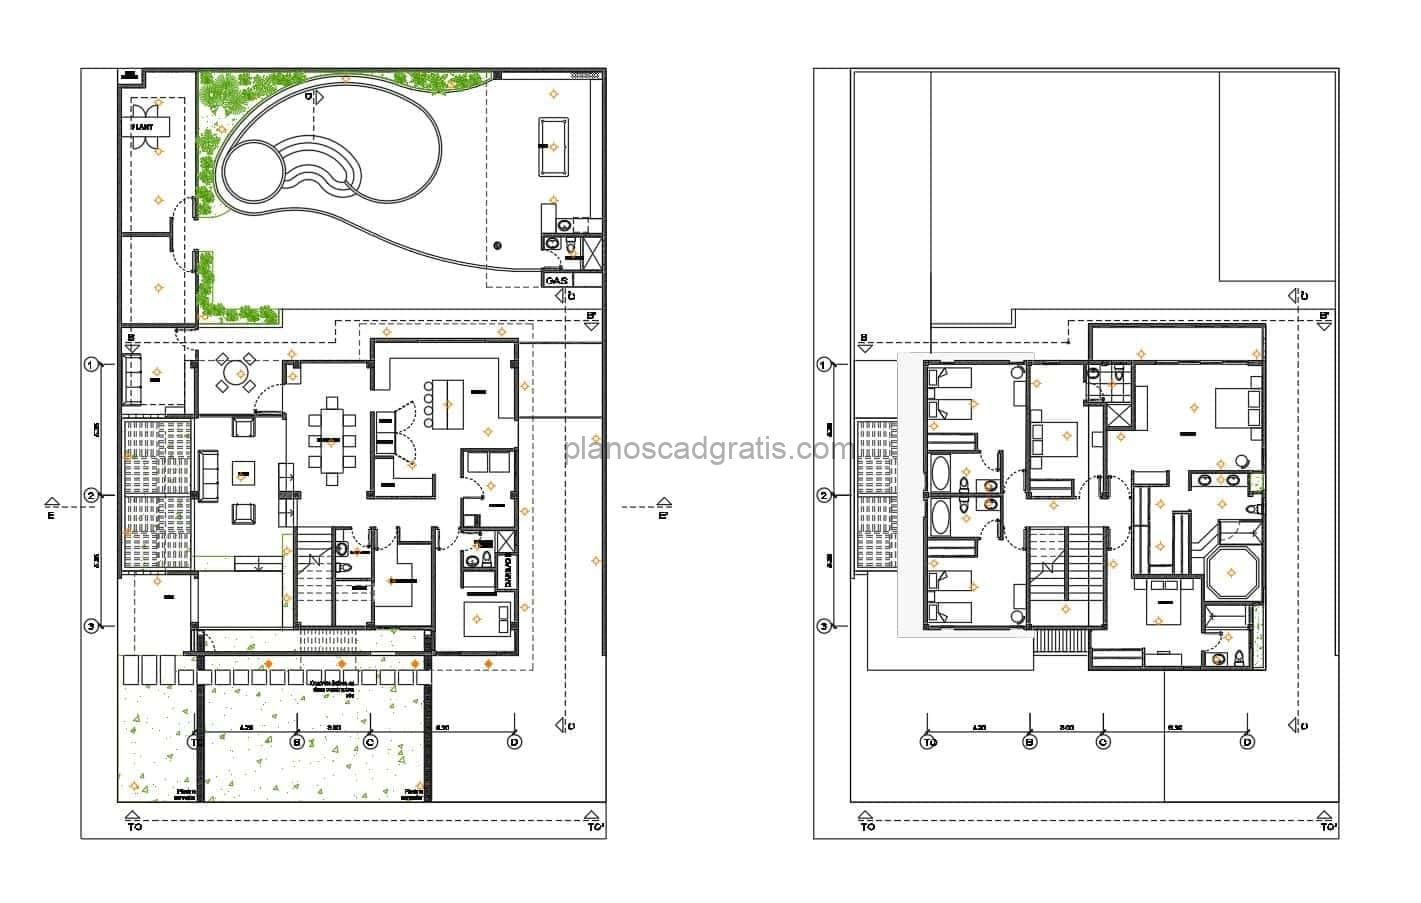 planos de proyecto de residencia de dos niveles con 6 habitaciones y area de piscina en patio, planos completos con detalles constructivos y dimensiones para descarga gratis en formato dwg